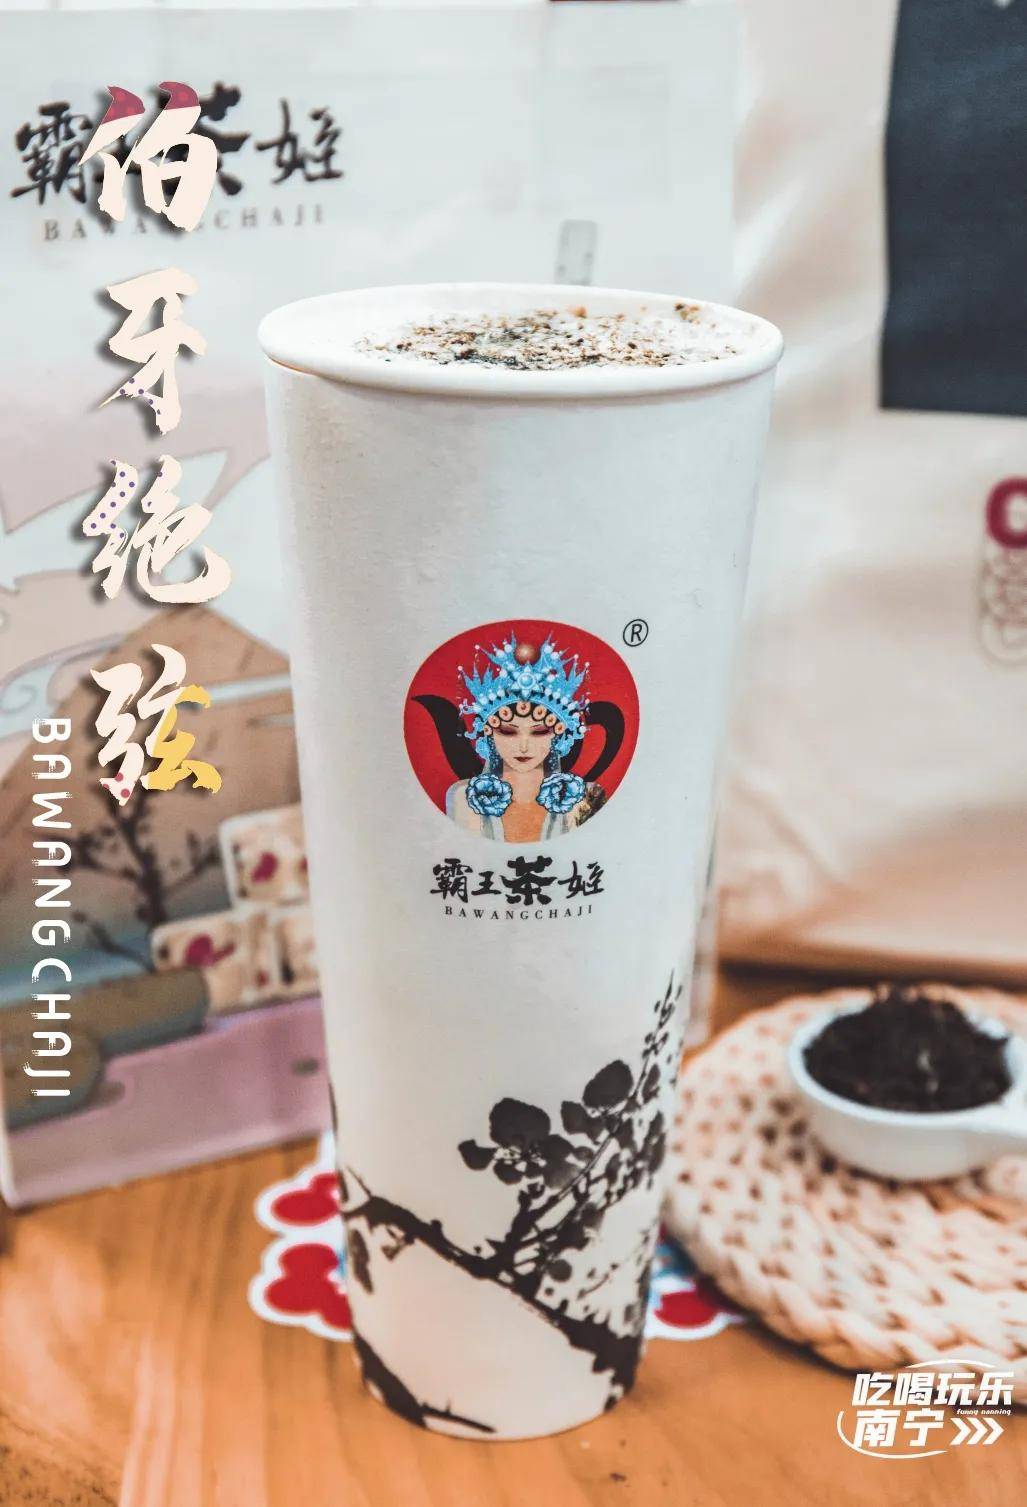 霸王茶姬将经典的东方茶香带到了全世界